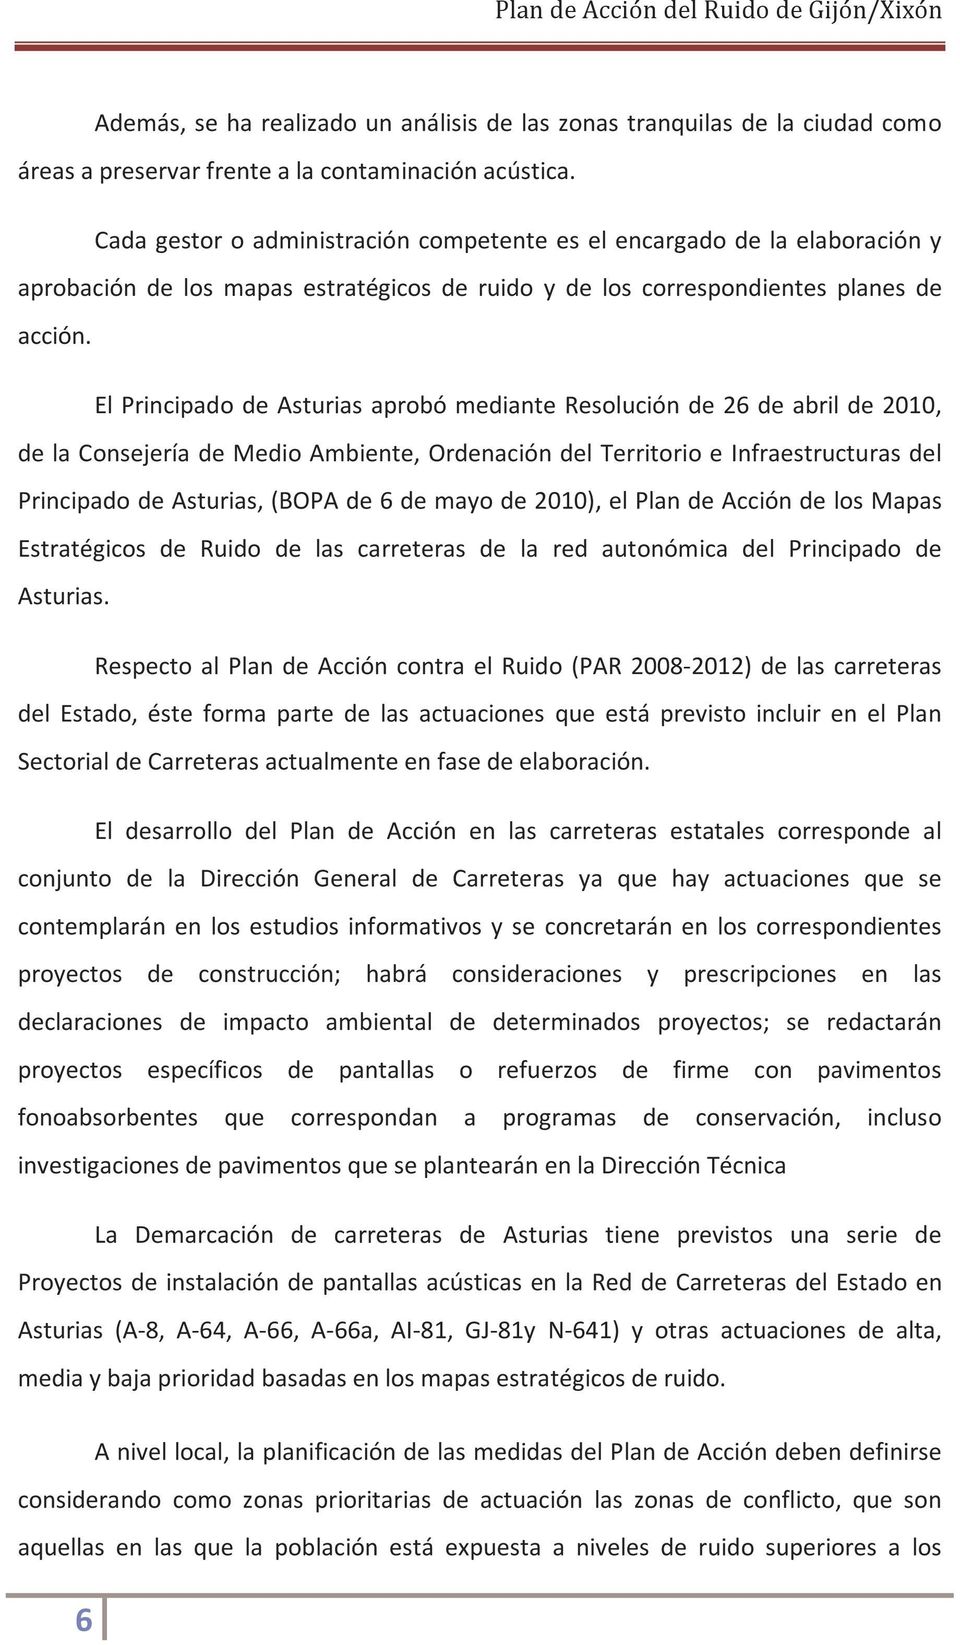 El Principado de Asturias aprobó mediante Resolución de 26 de abril de 2010, de la Consejería de Medio Ambiente, Ordenación del Territorio e Infraestructuras del Principado de Asturias, (BOPA de 6 de